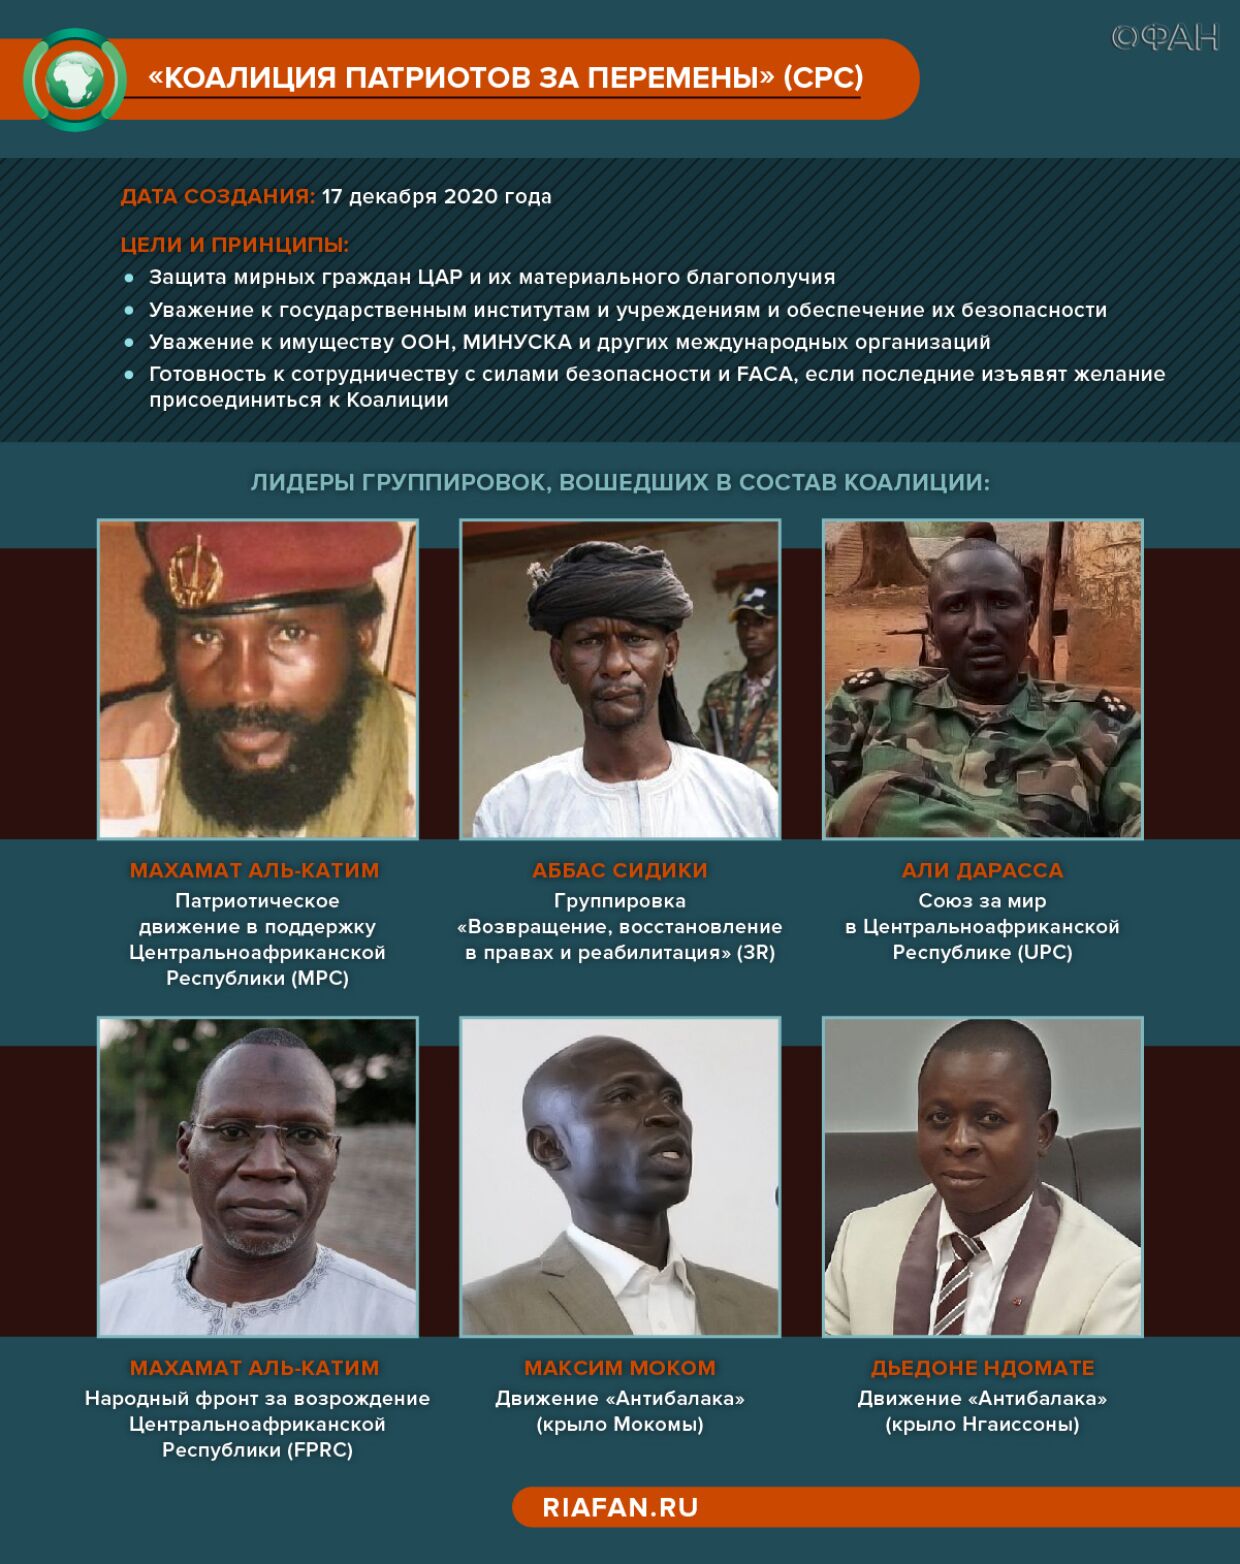 Почему выборы в Центральноафриканской стране так интересны всему миру